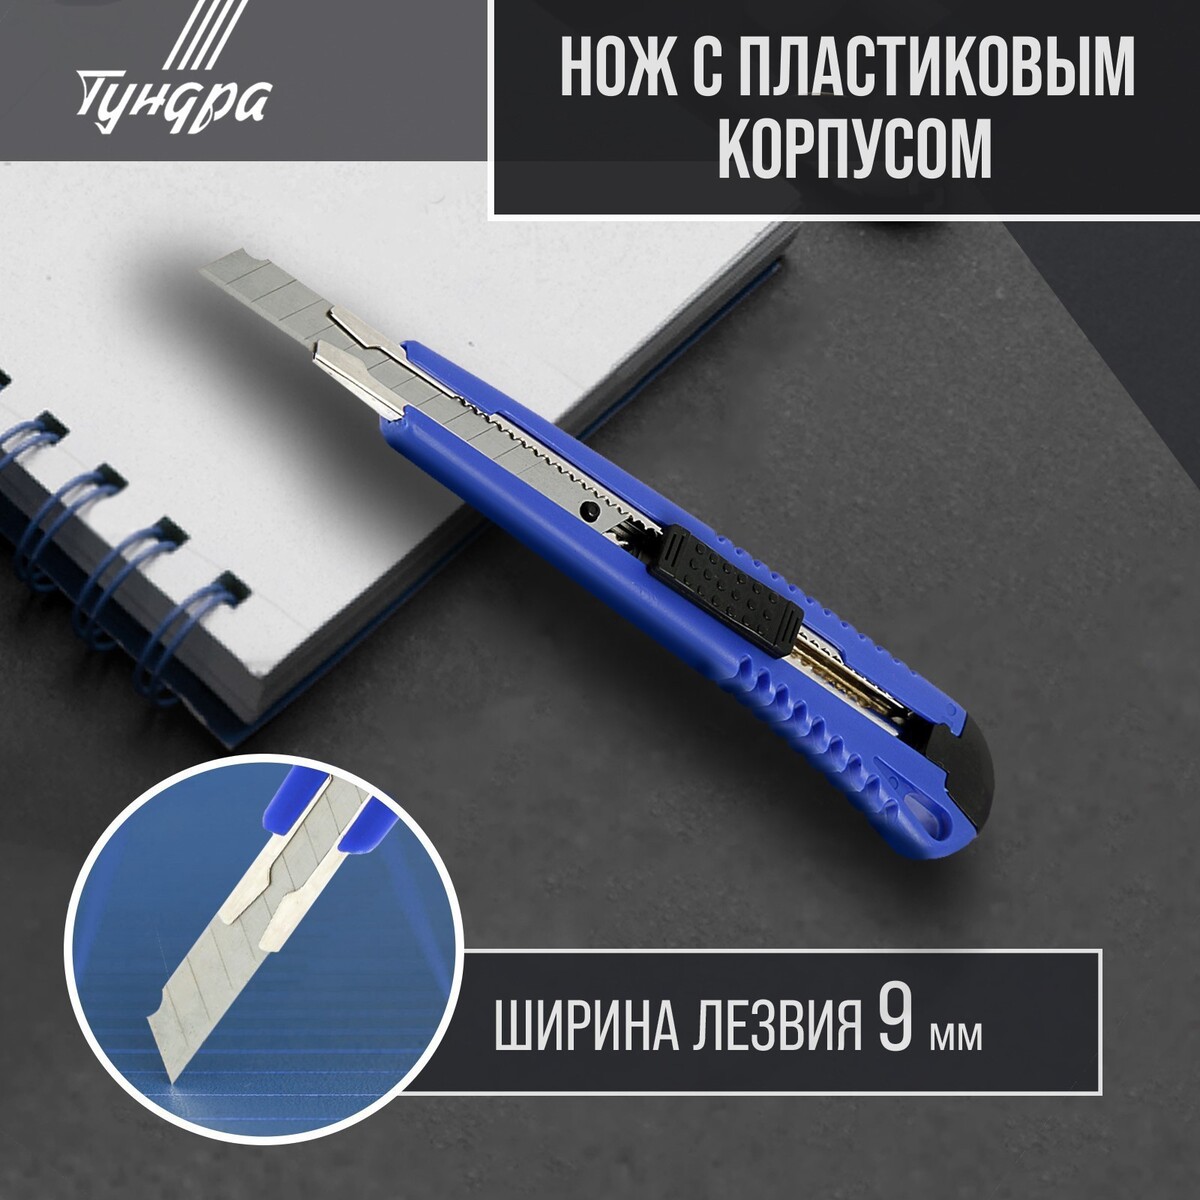 Нож универсальный тундра, пластиковый корпус, металлическая направляющая, 9 мм нож универсальный тундра вдом пластиковый корпус 18 мм